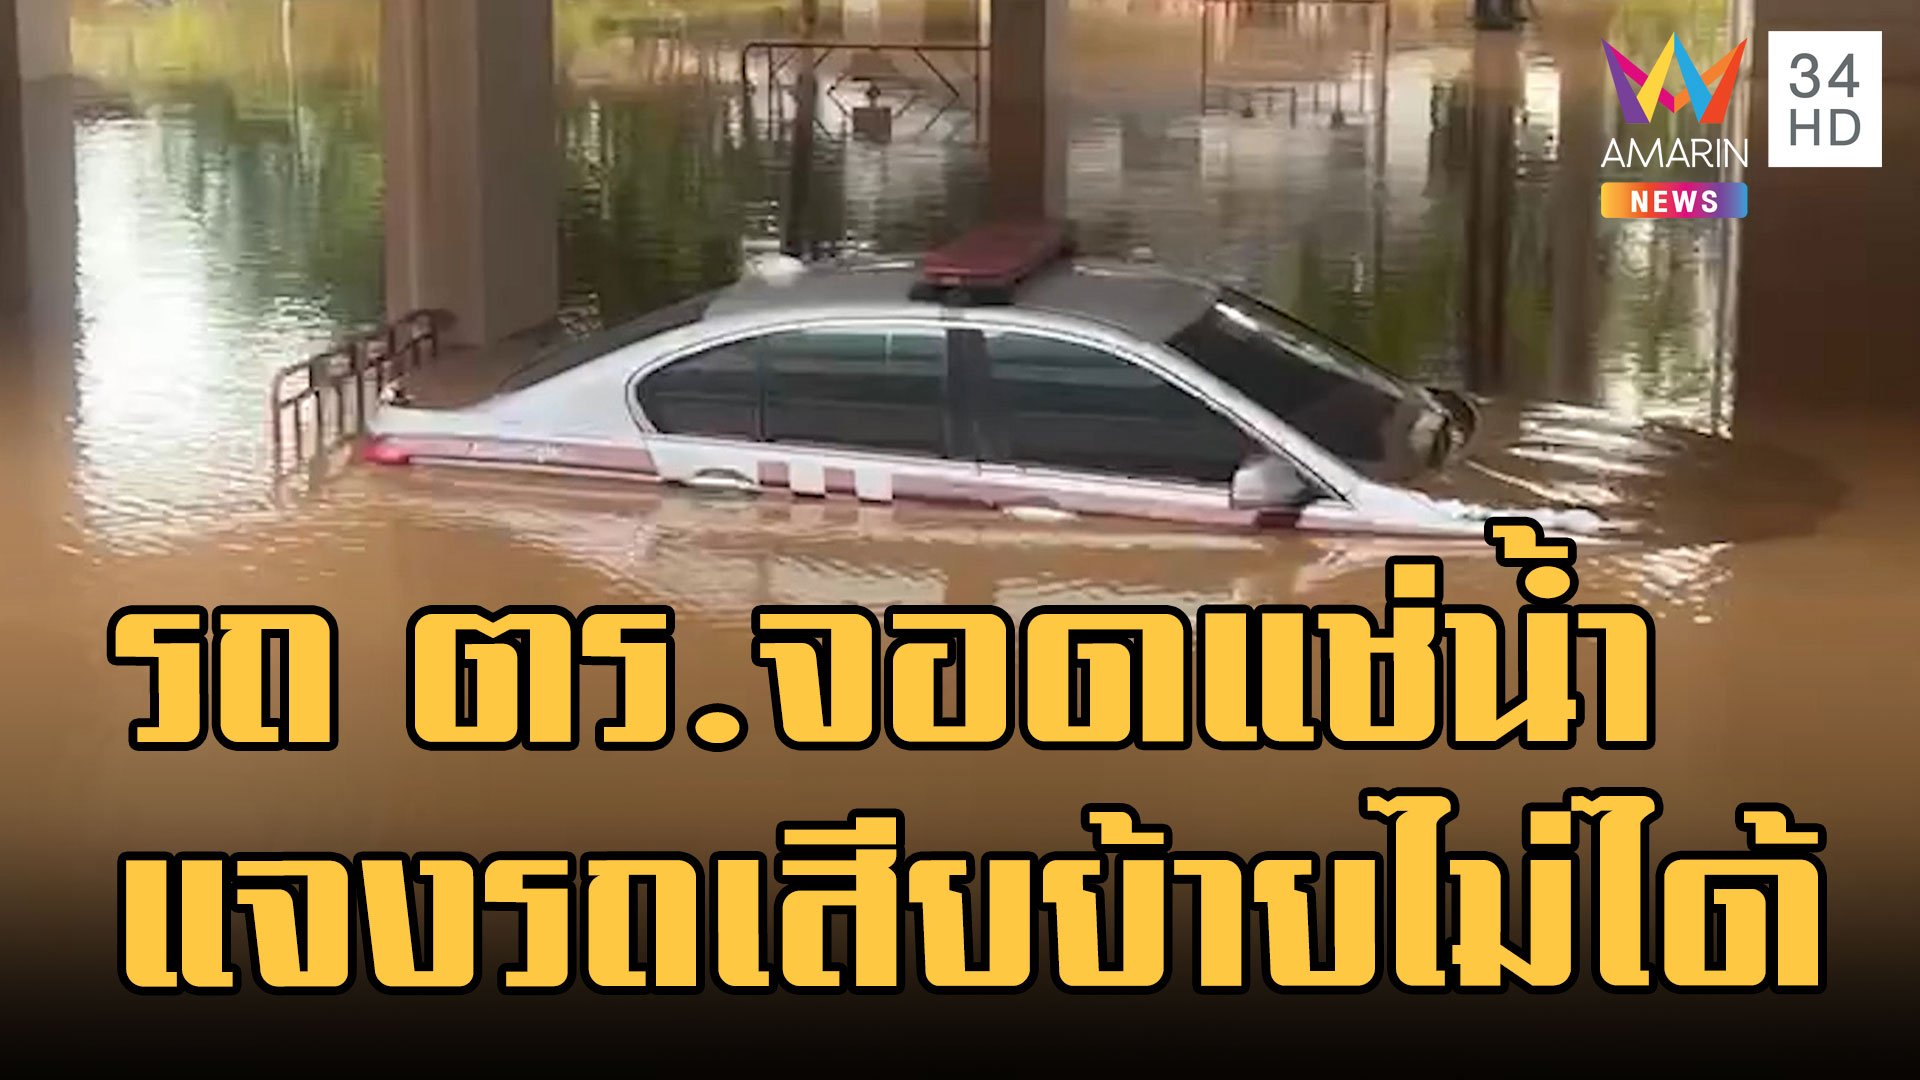 ดราม่า! รถตำรวจจอดแช่น้ำท่วมเกือบมิดคัน ตร.แจงรถเสียย้ายไม่ทัน ไม่คุ้มค่าซ่อม | ข่าวอรุณอมรินทร์ | 5 ต.ค. 65 | AMARIN TVHD34